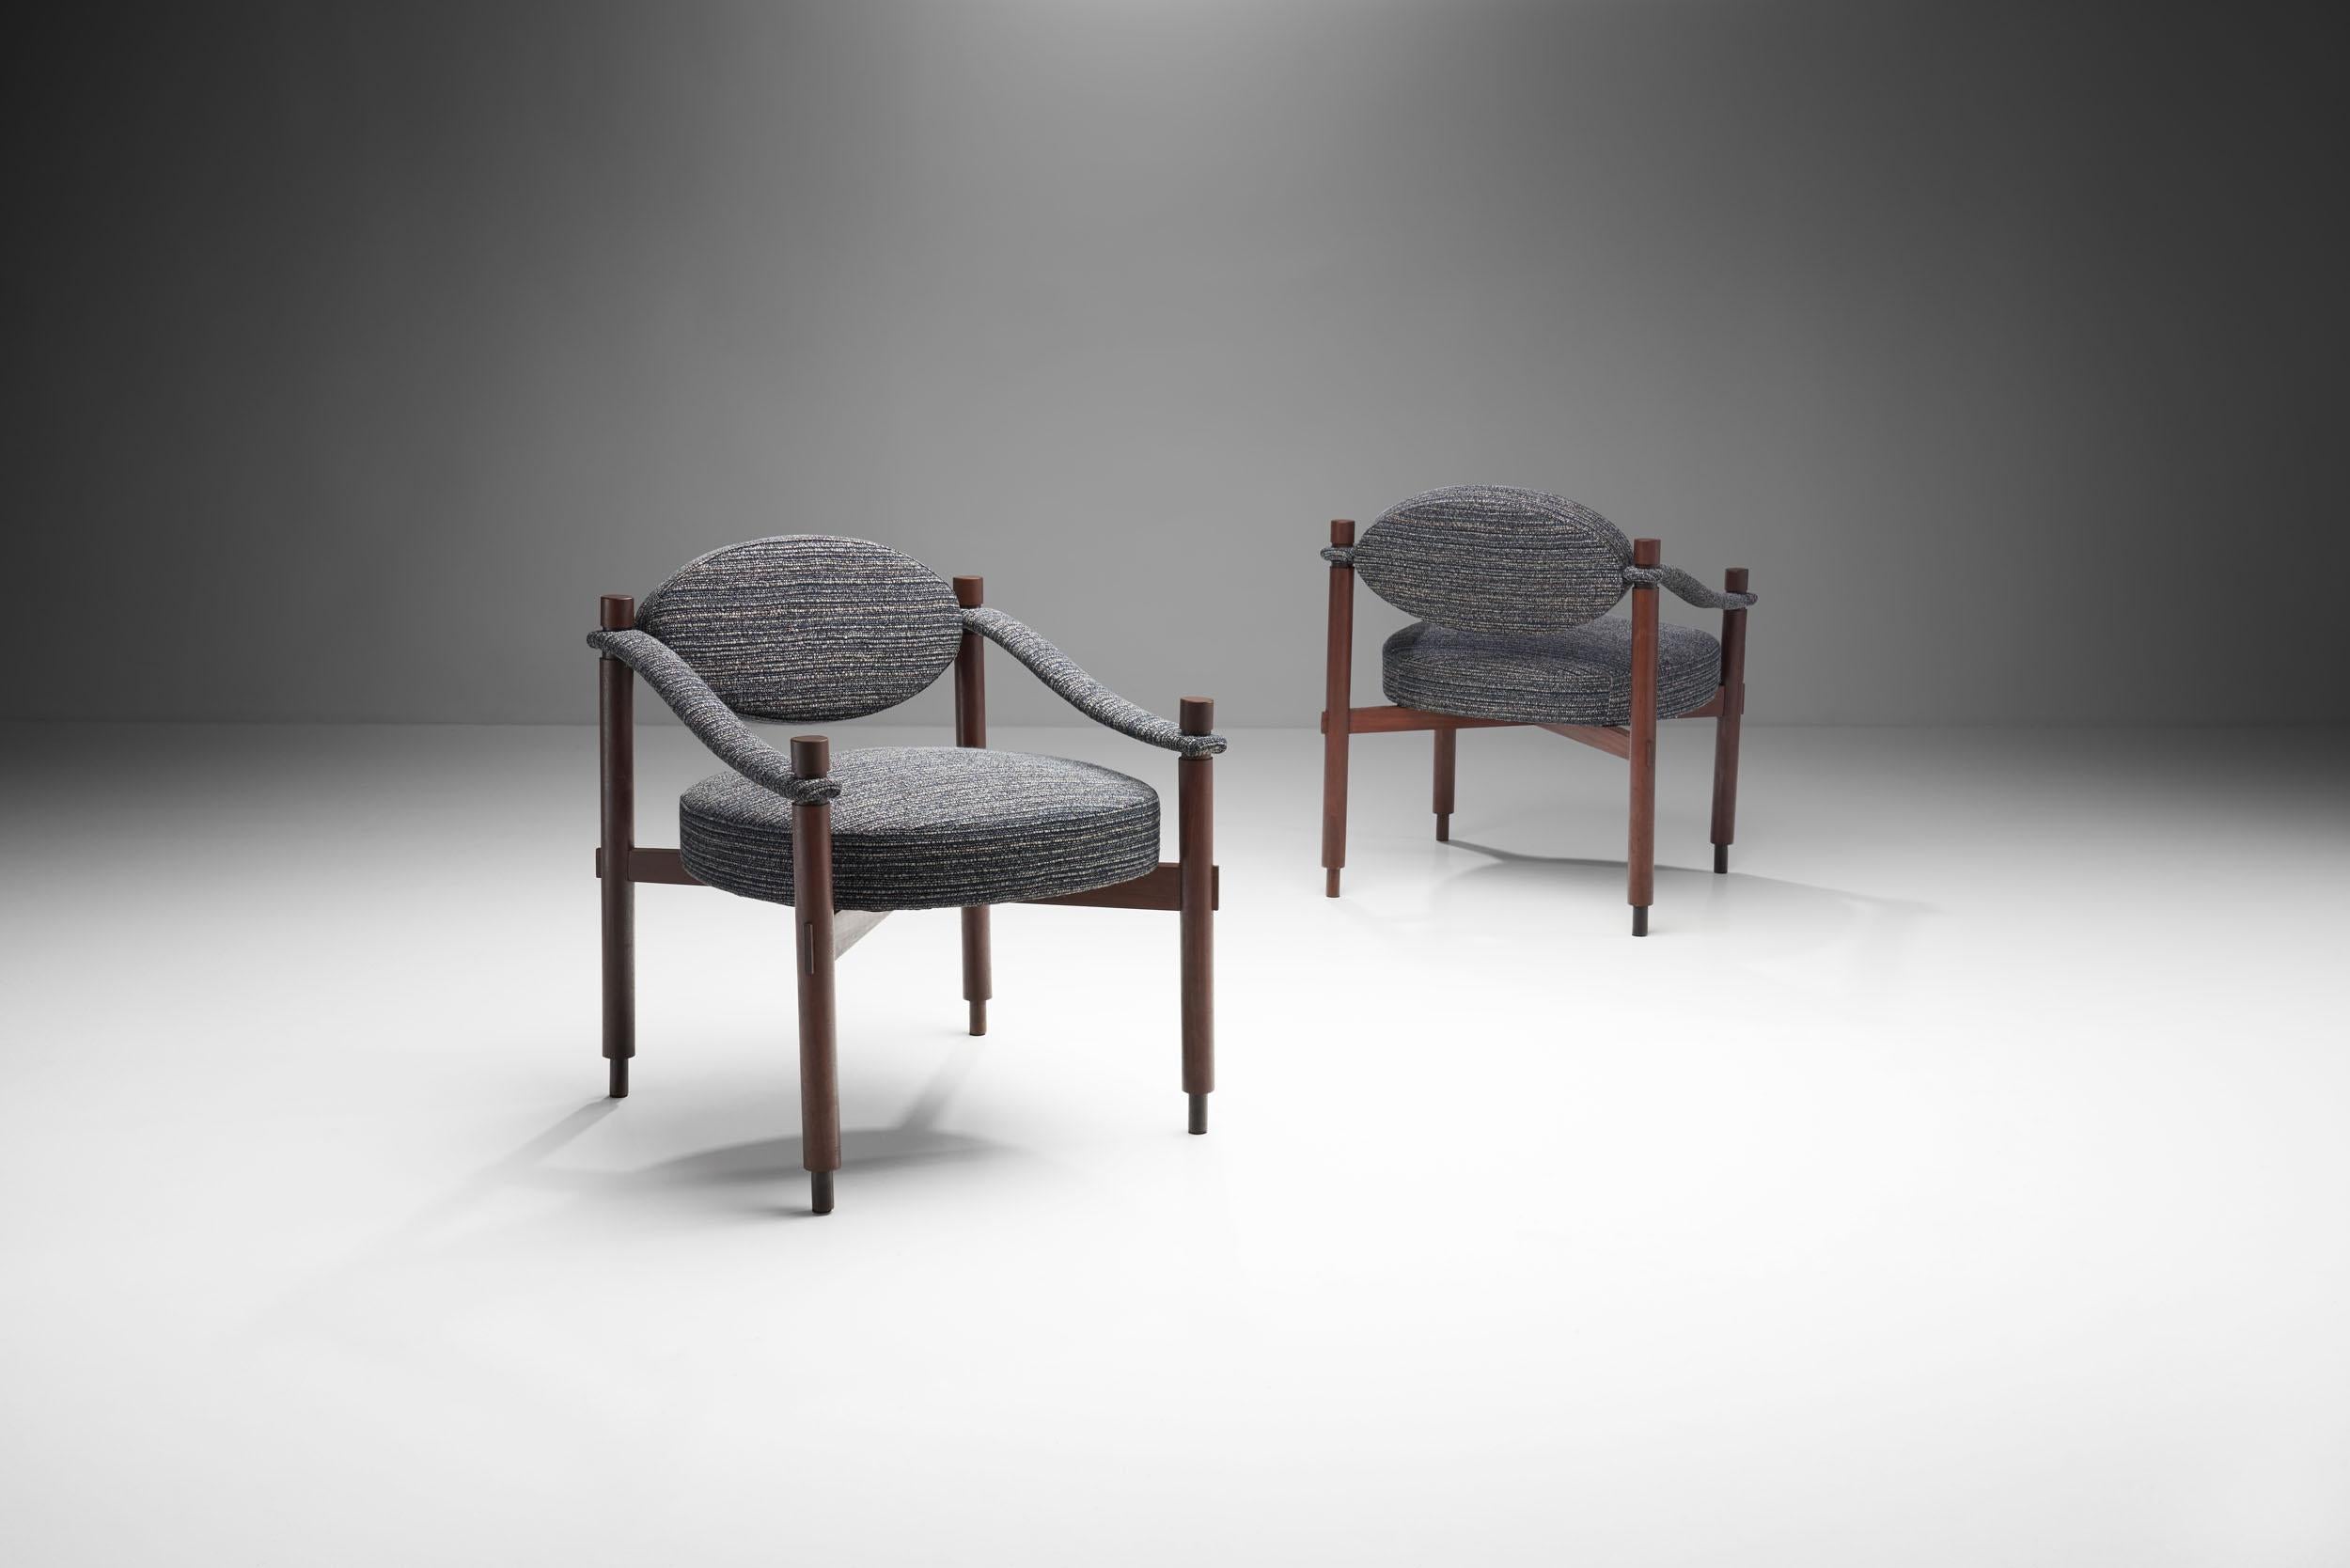 Diese italienischen Stühle wurden mit viel Liebe zum Detail entworfen, was sich in den einzigartigen Kurven und klaren geometrischen Formen zeigt. Dieses Paar zeichnet sich durch seidige Linien und Texturen aus und ist ein Beispiel für das